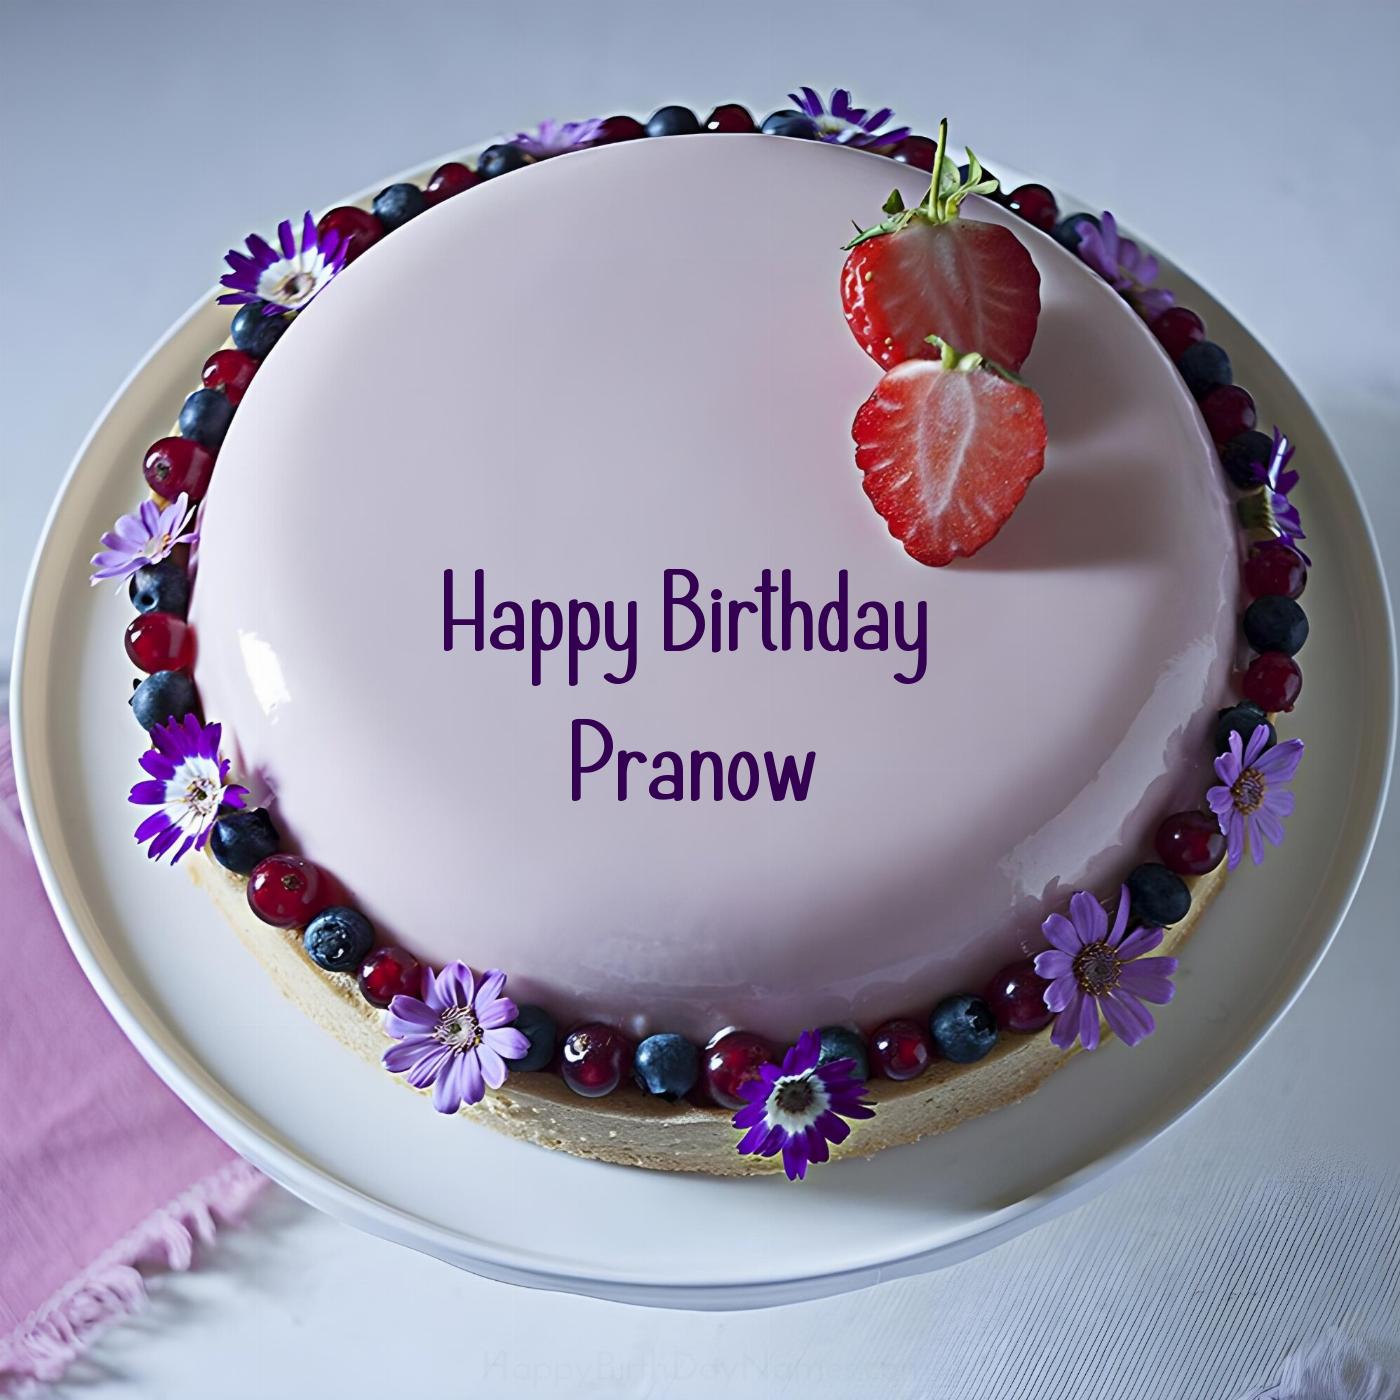 Happy Birthday Pranow Strawberry Flowers Cake